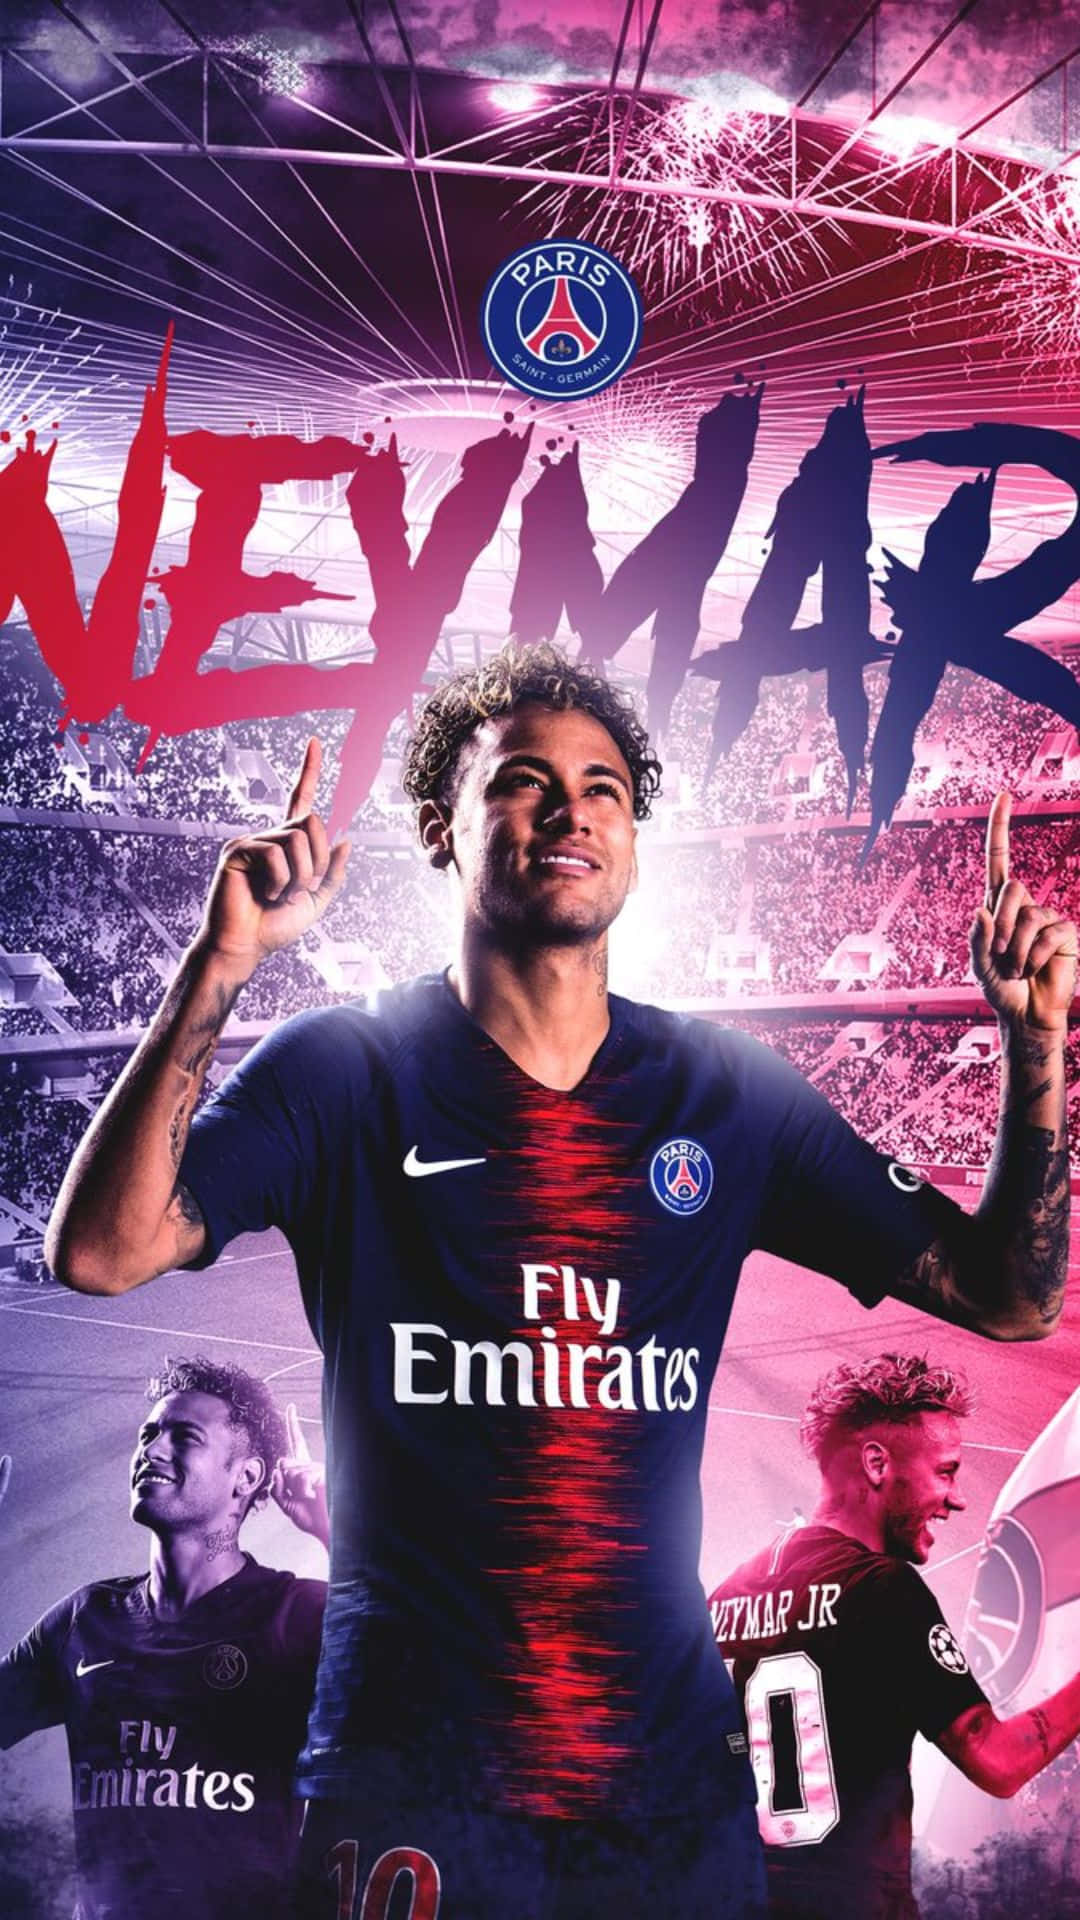 Neymarpräsentiert Sein Neues Iphone Wallpaper